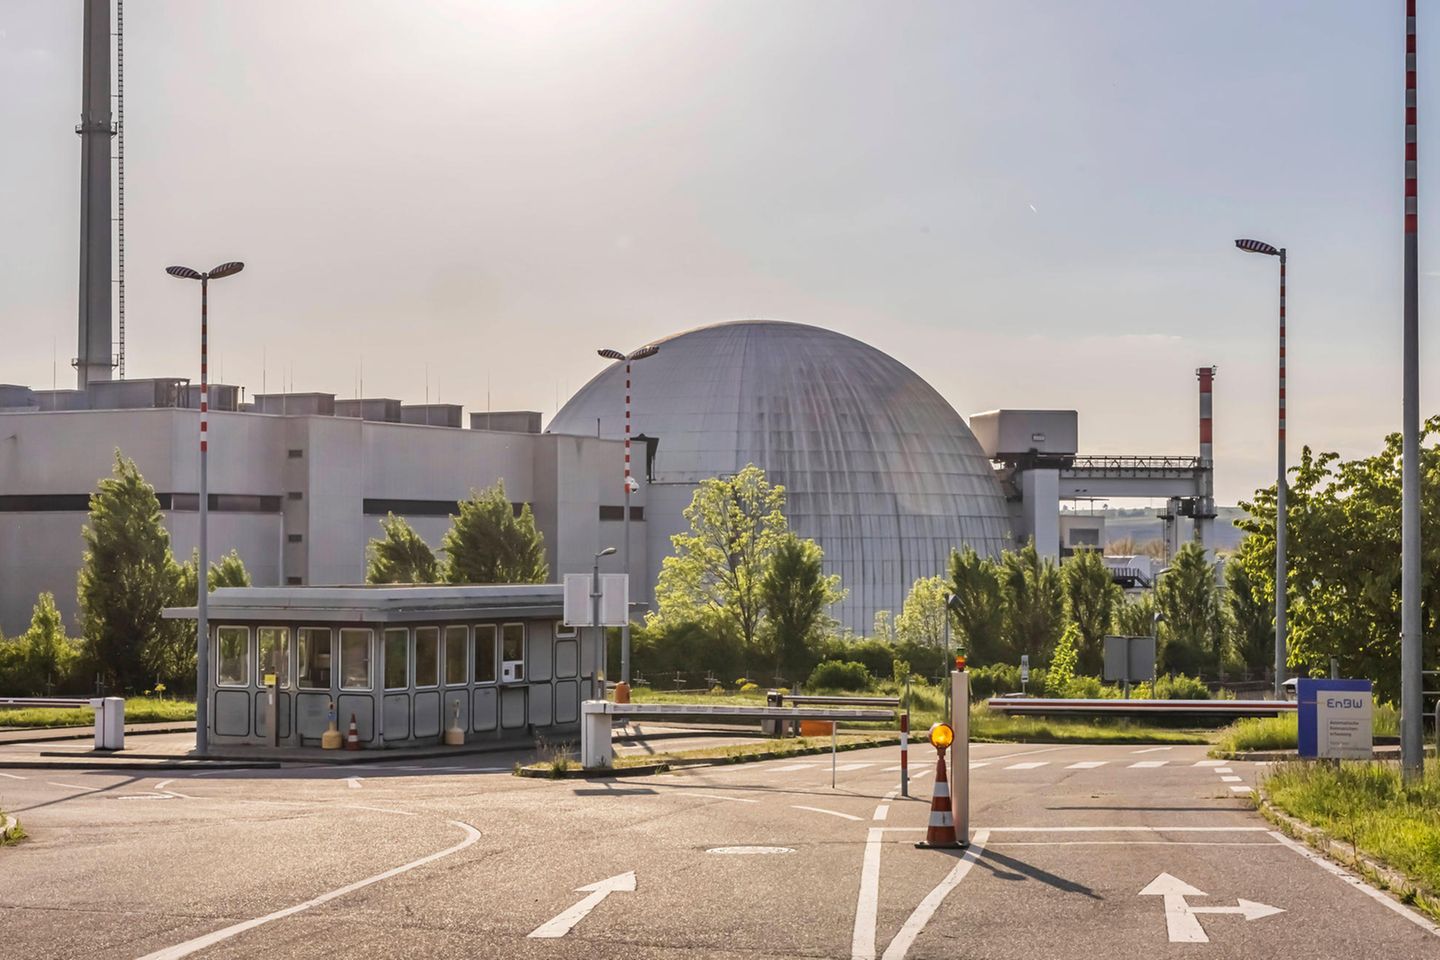 Das Atomkraftwerk Neckarwestheim 2 in Baden-Württemberg